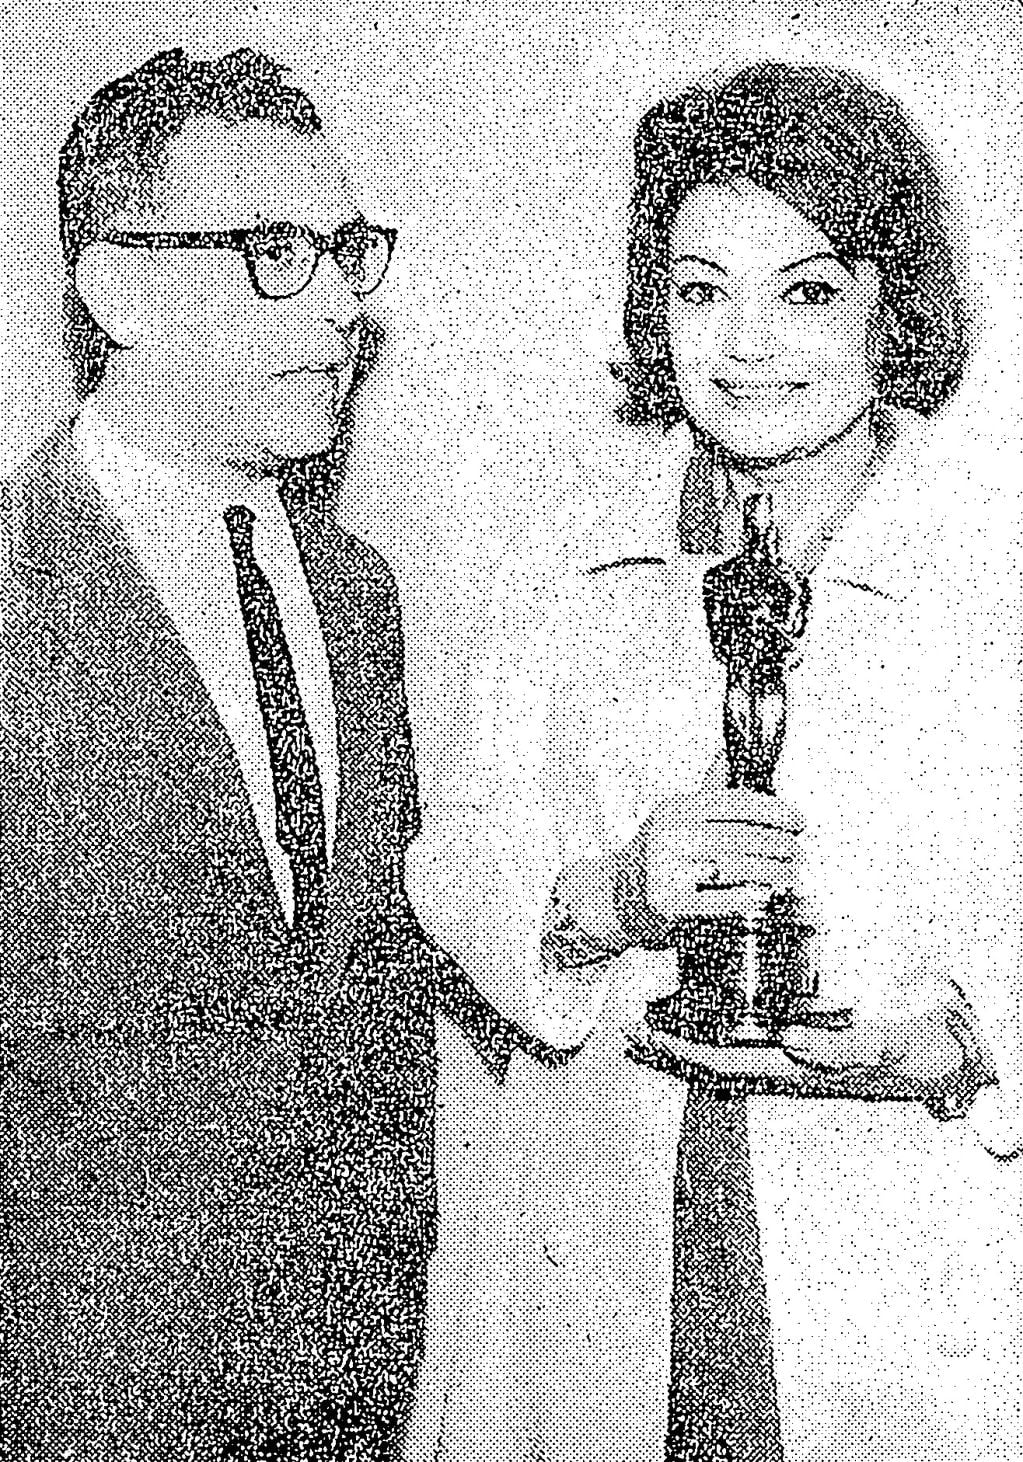 El escritor mendocino Antonio Di Benedetto junto a la actriz Lila Kedrova luego de recibir el Oscar por su actuación en "Zorba el griego".